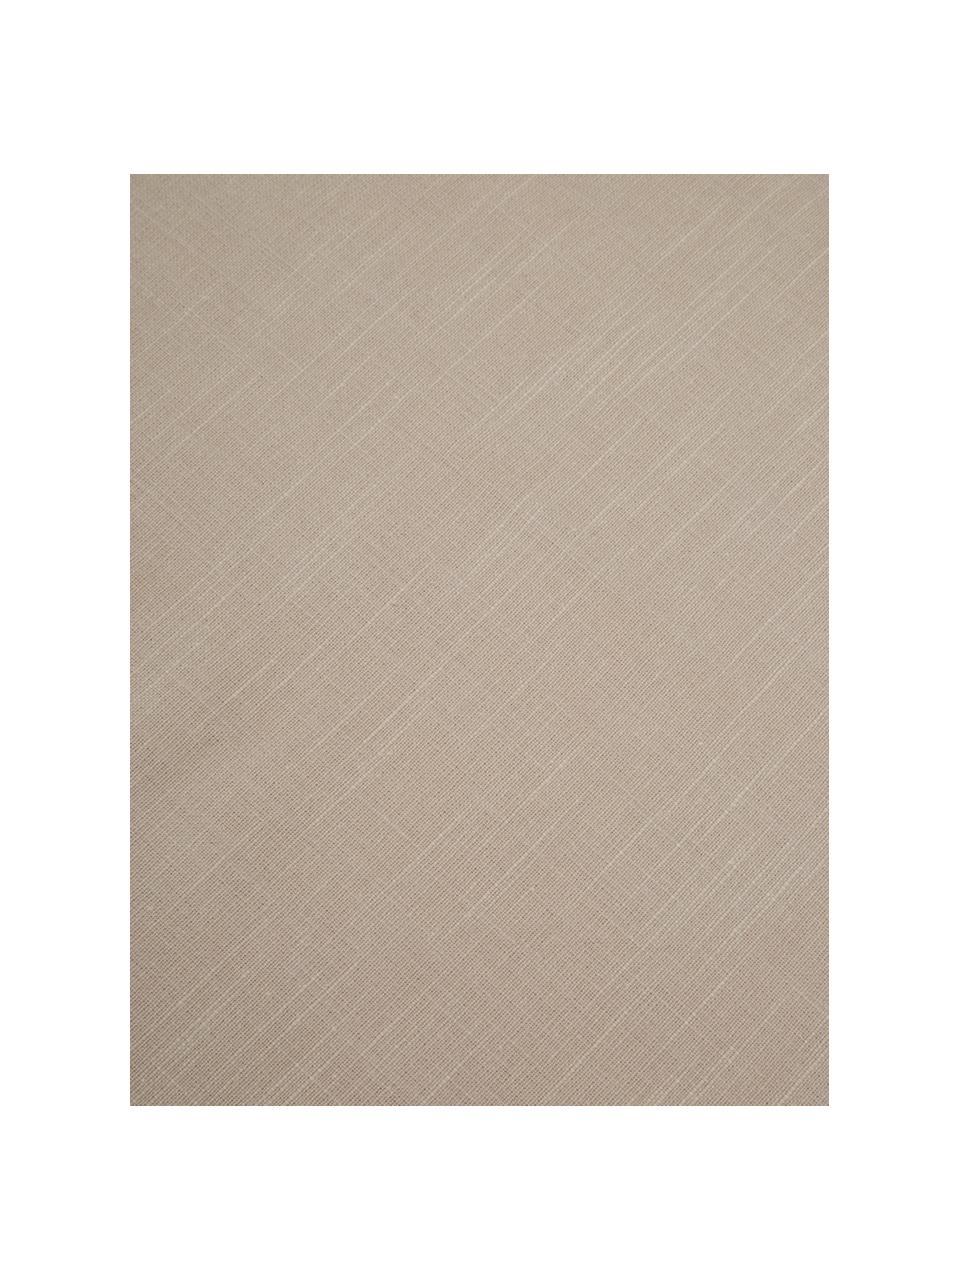 Komplet podkładek z frędzlami Henley, 2 szt., 100% bawełna, Beżowy, S 35 x D 45 cm